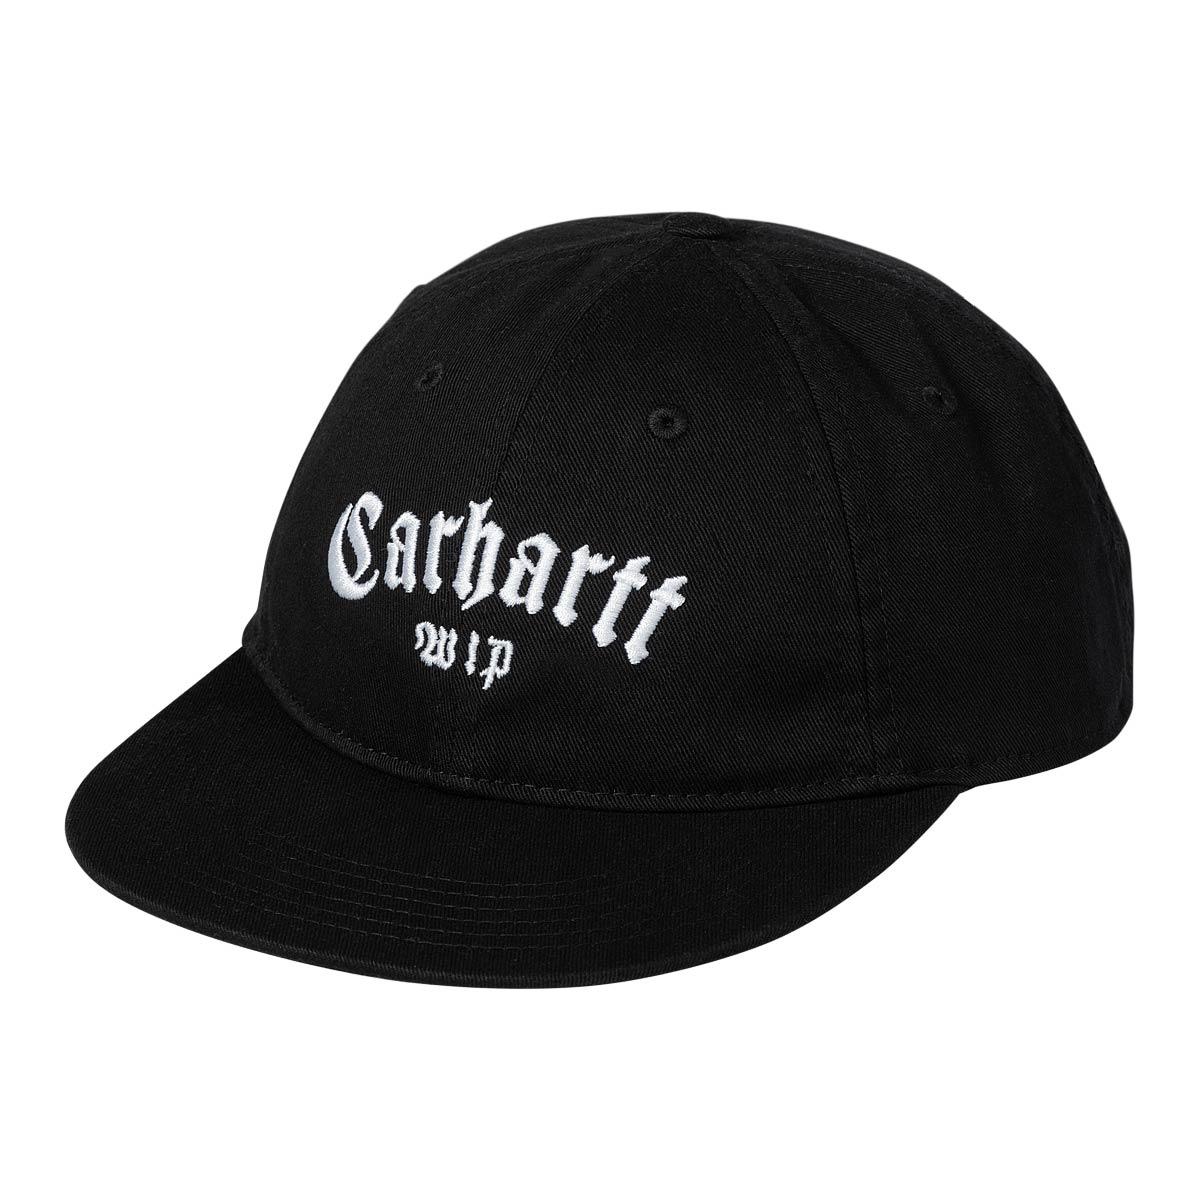 Carhartt Wip Onyx Cap, Black/white ONE